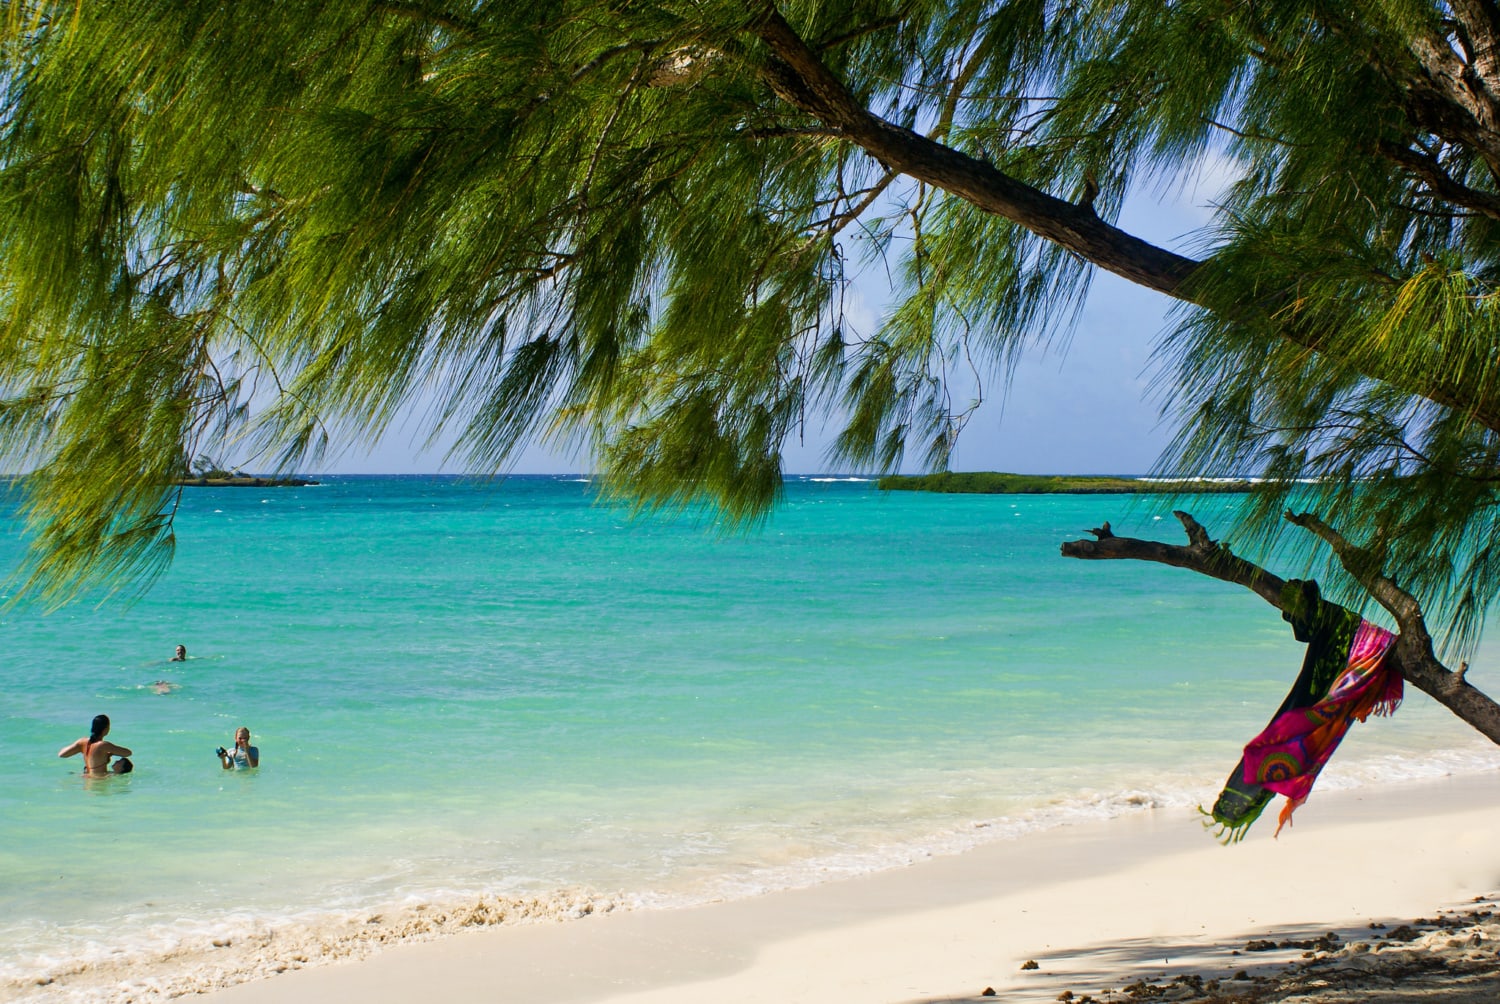 Pinienbaum vor karibischem Strand mit türkisen Wasser und badender Person.